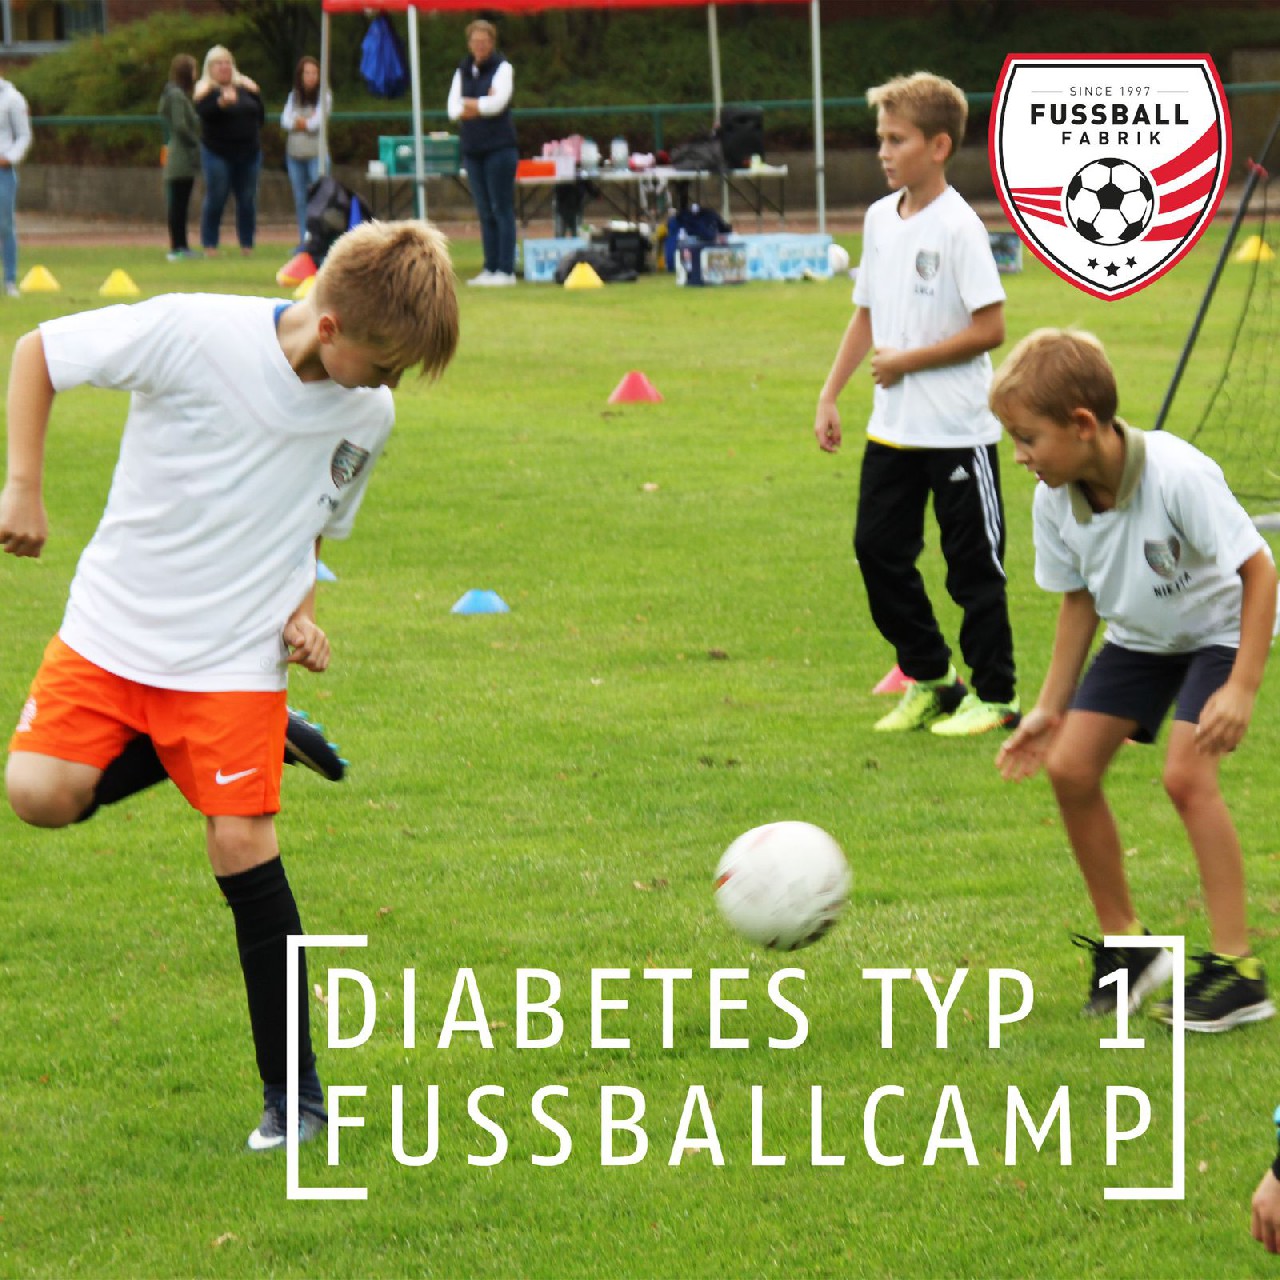 Fußballcamp für Kinder mit Diabetes Typ 1